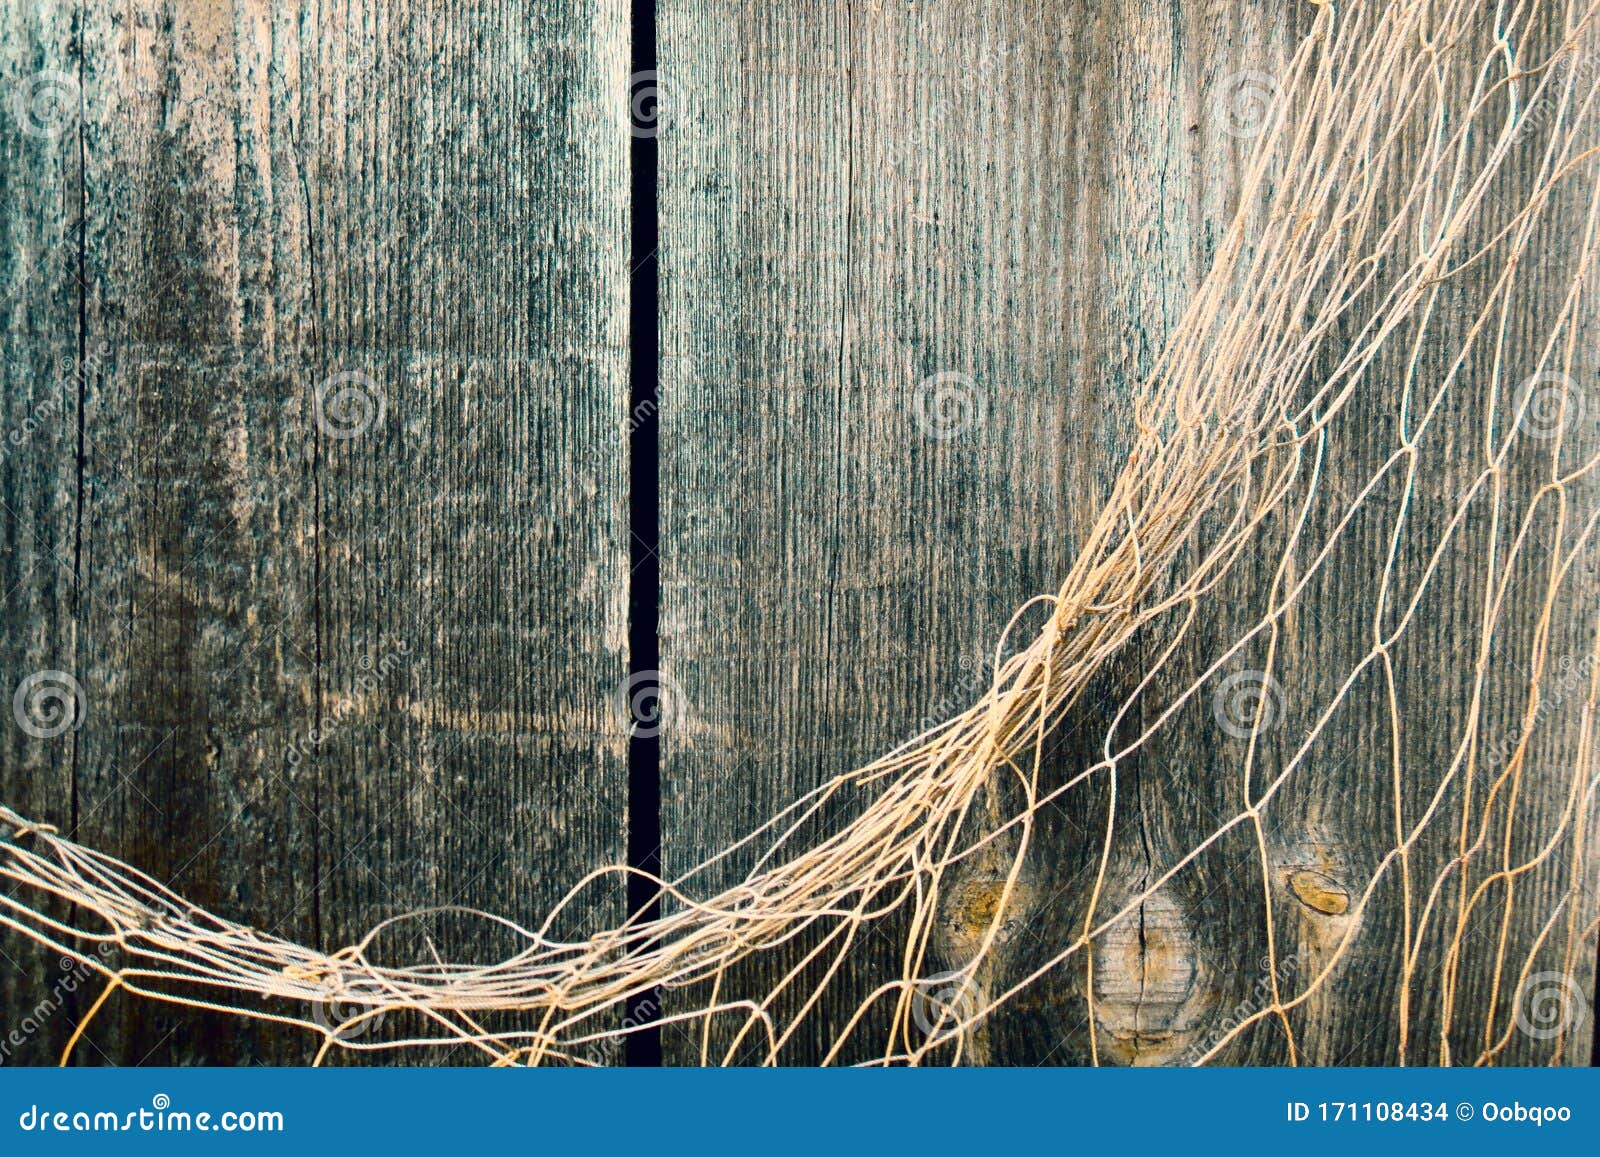 Fishing Net on Vintage Wood, Maritime Nautical Background Texture Stock  Photo - Image of method, capture: 171108434